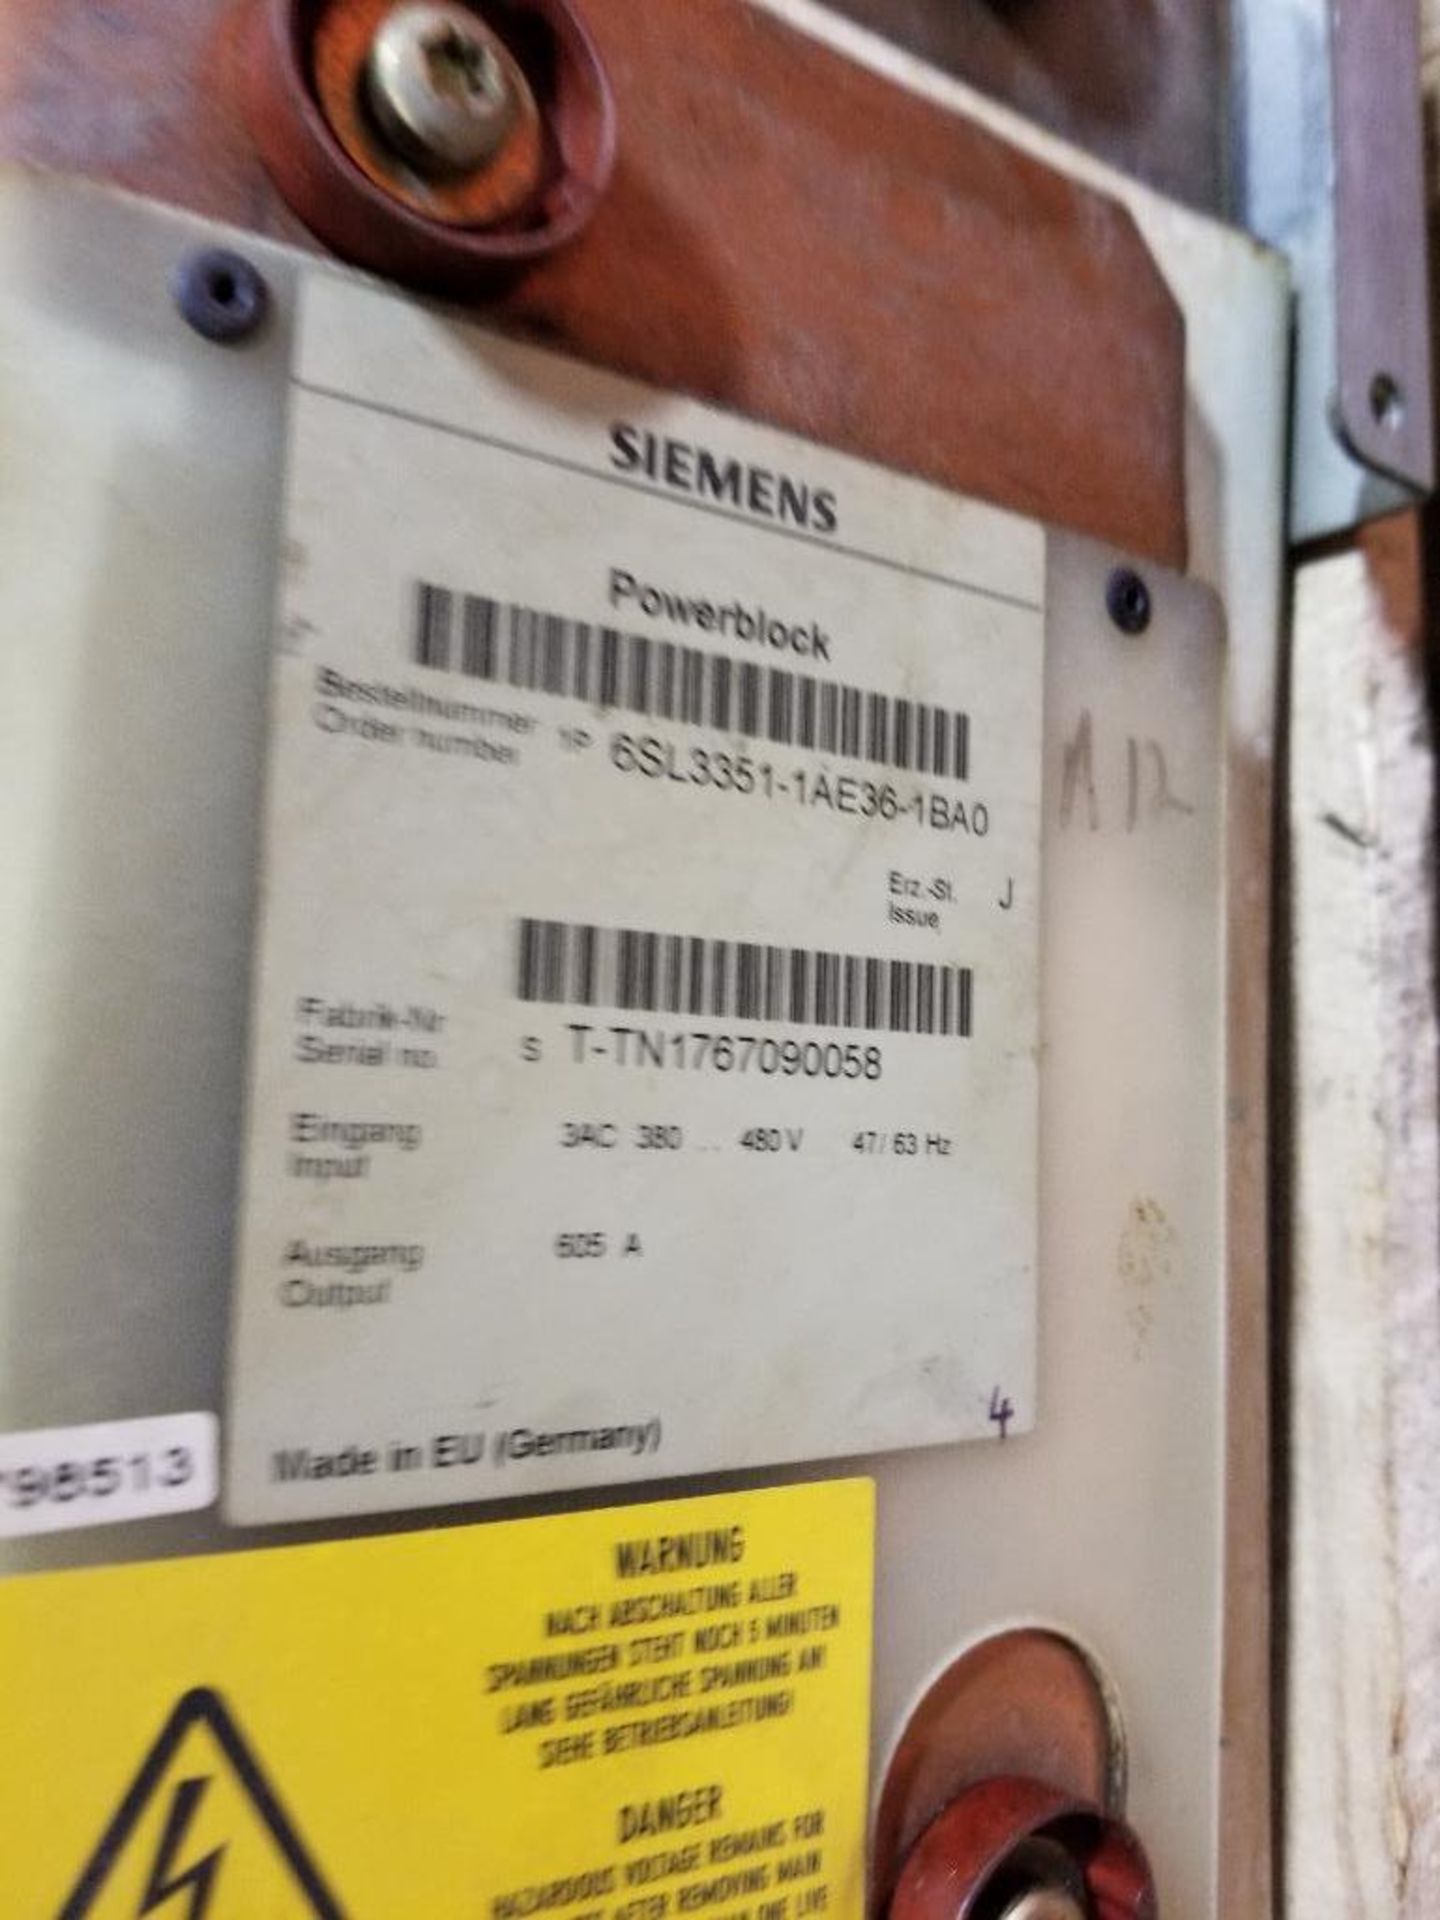 Siemens powerblock. Part number 6SL3352-1AE3601BA0. - Image 2 of 5